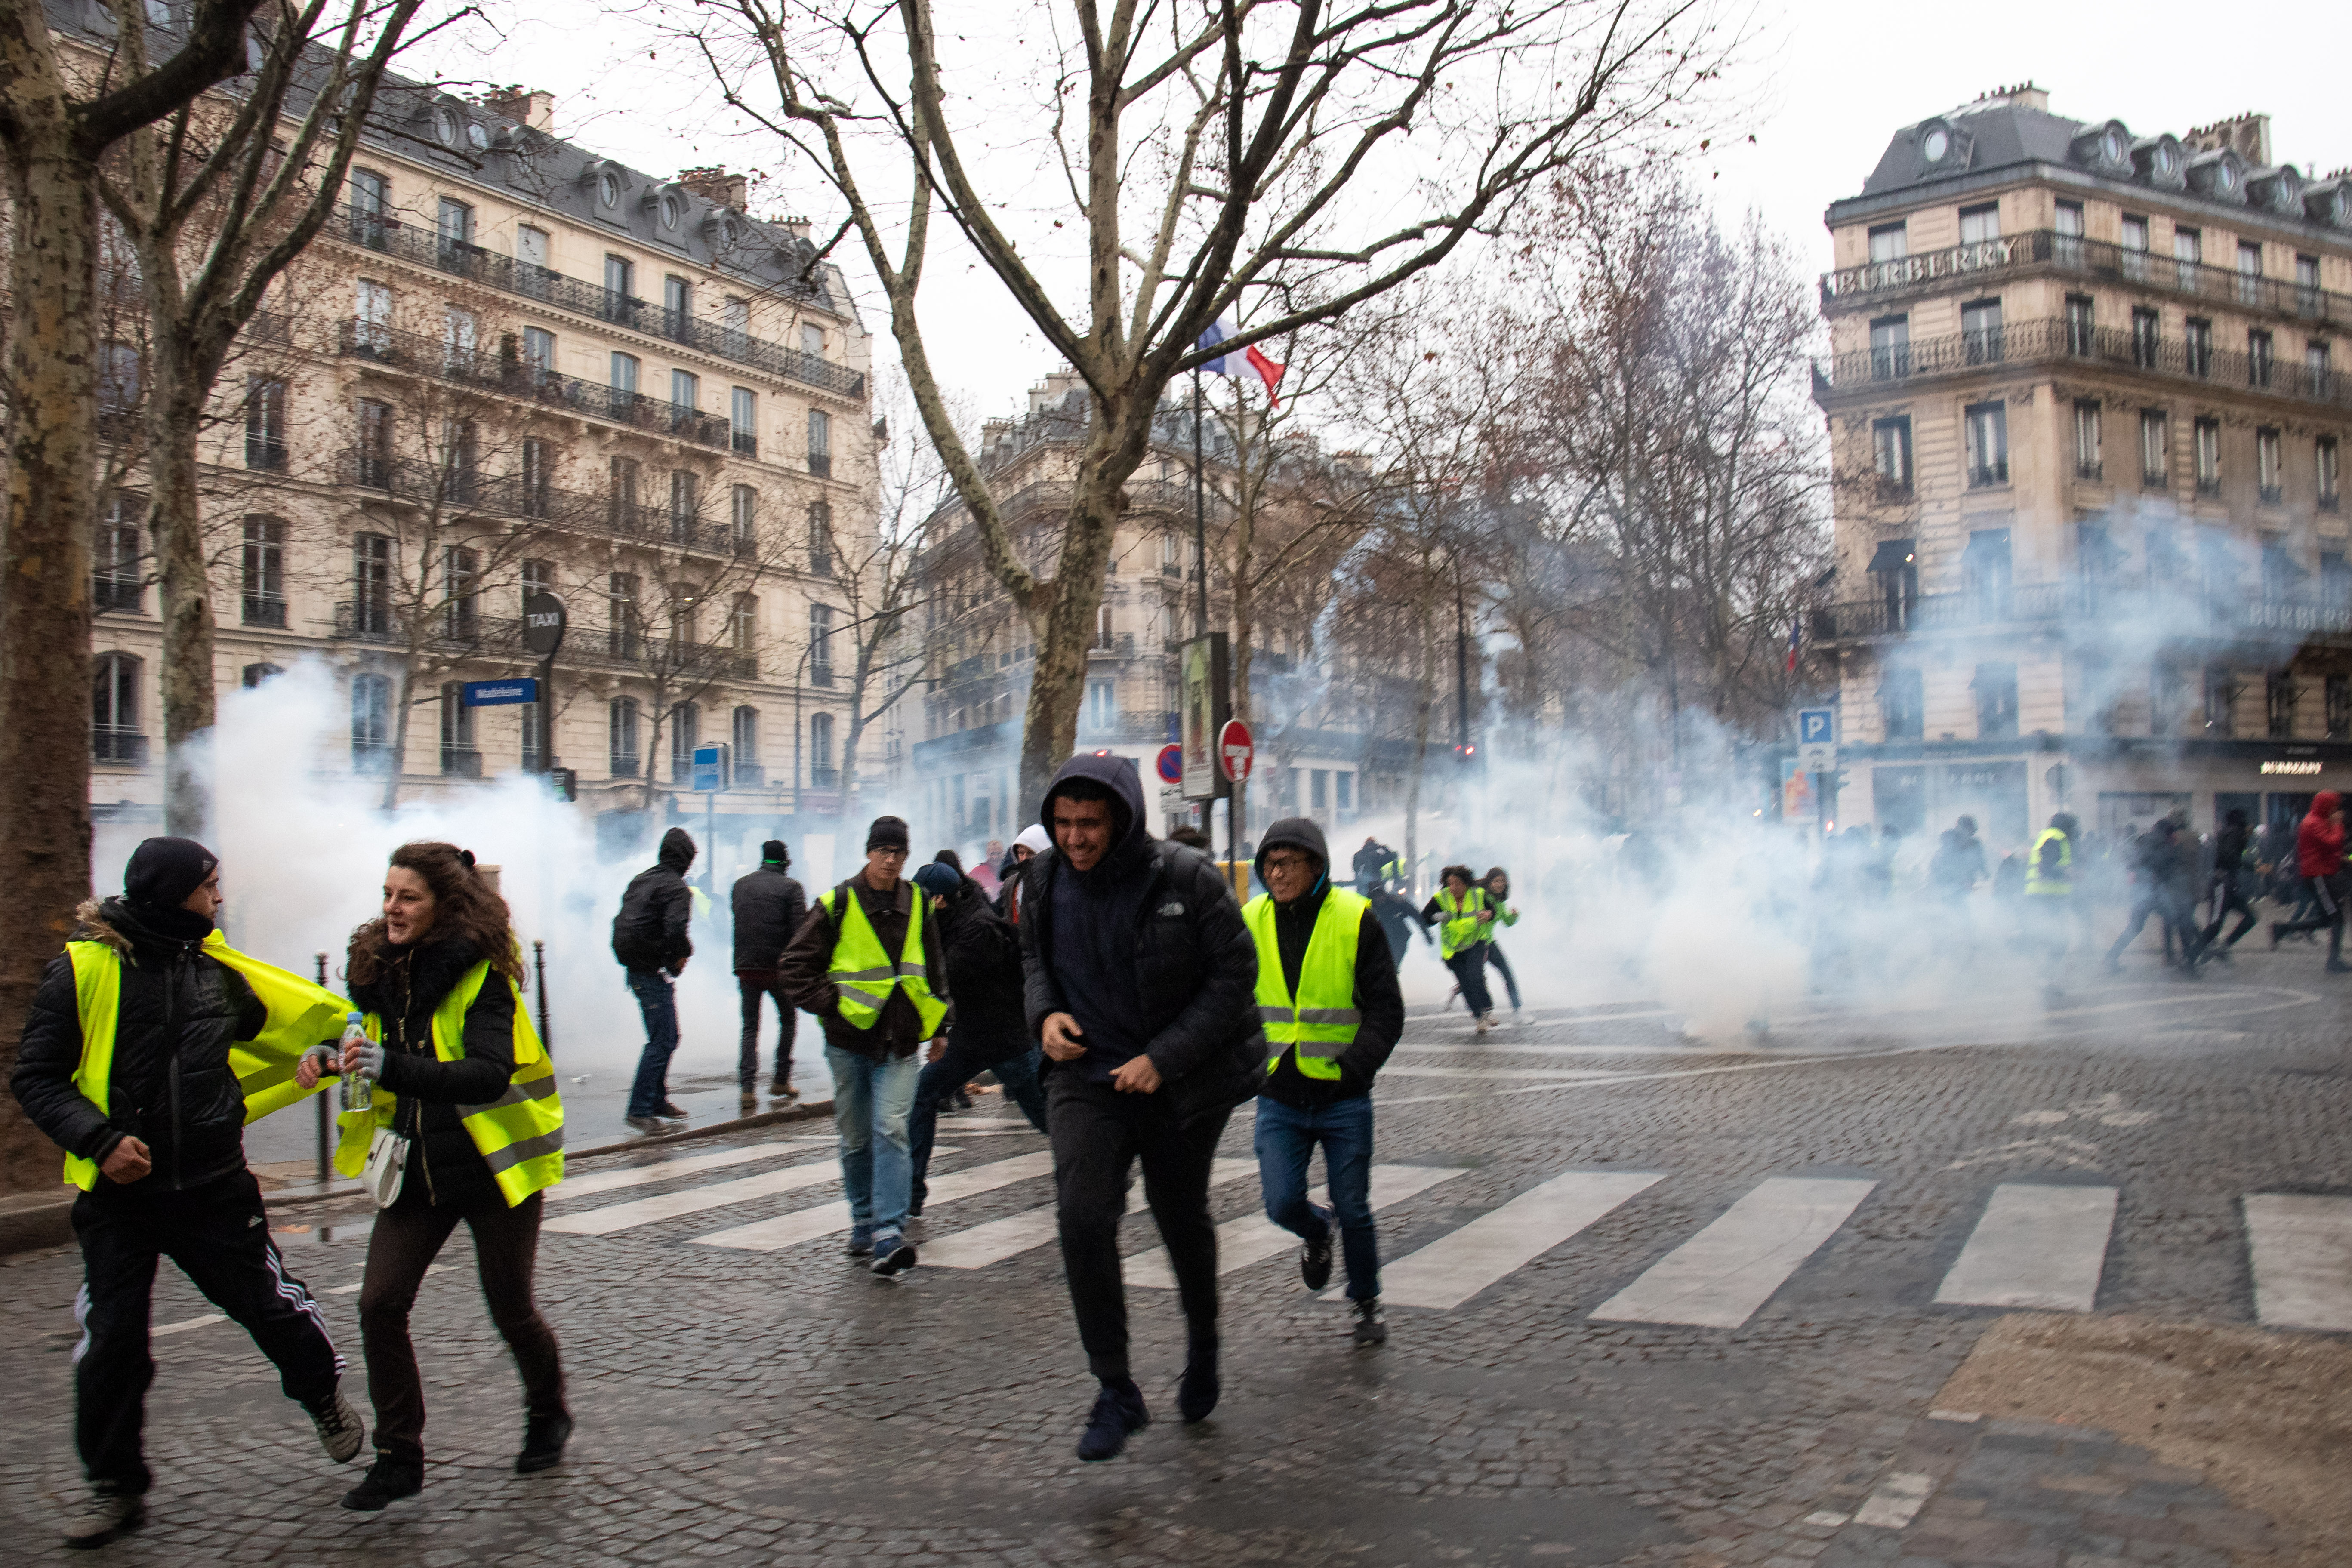 Jeden Samstag füllen sich Frankreichs Straßen mit den auffälligen Protestierenden. Foto: Foto: flickr.com/Olivier Ortelpa (https://flic.kr/p/2dnZ4XG)